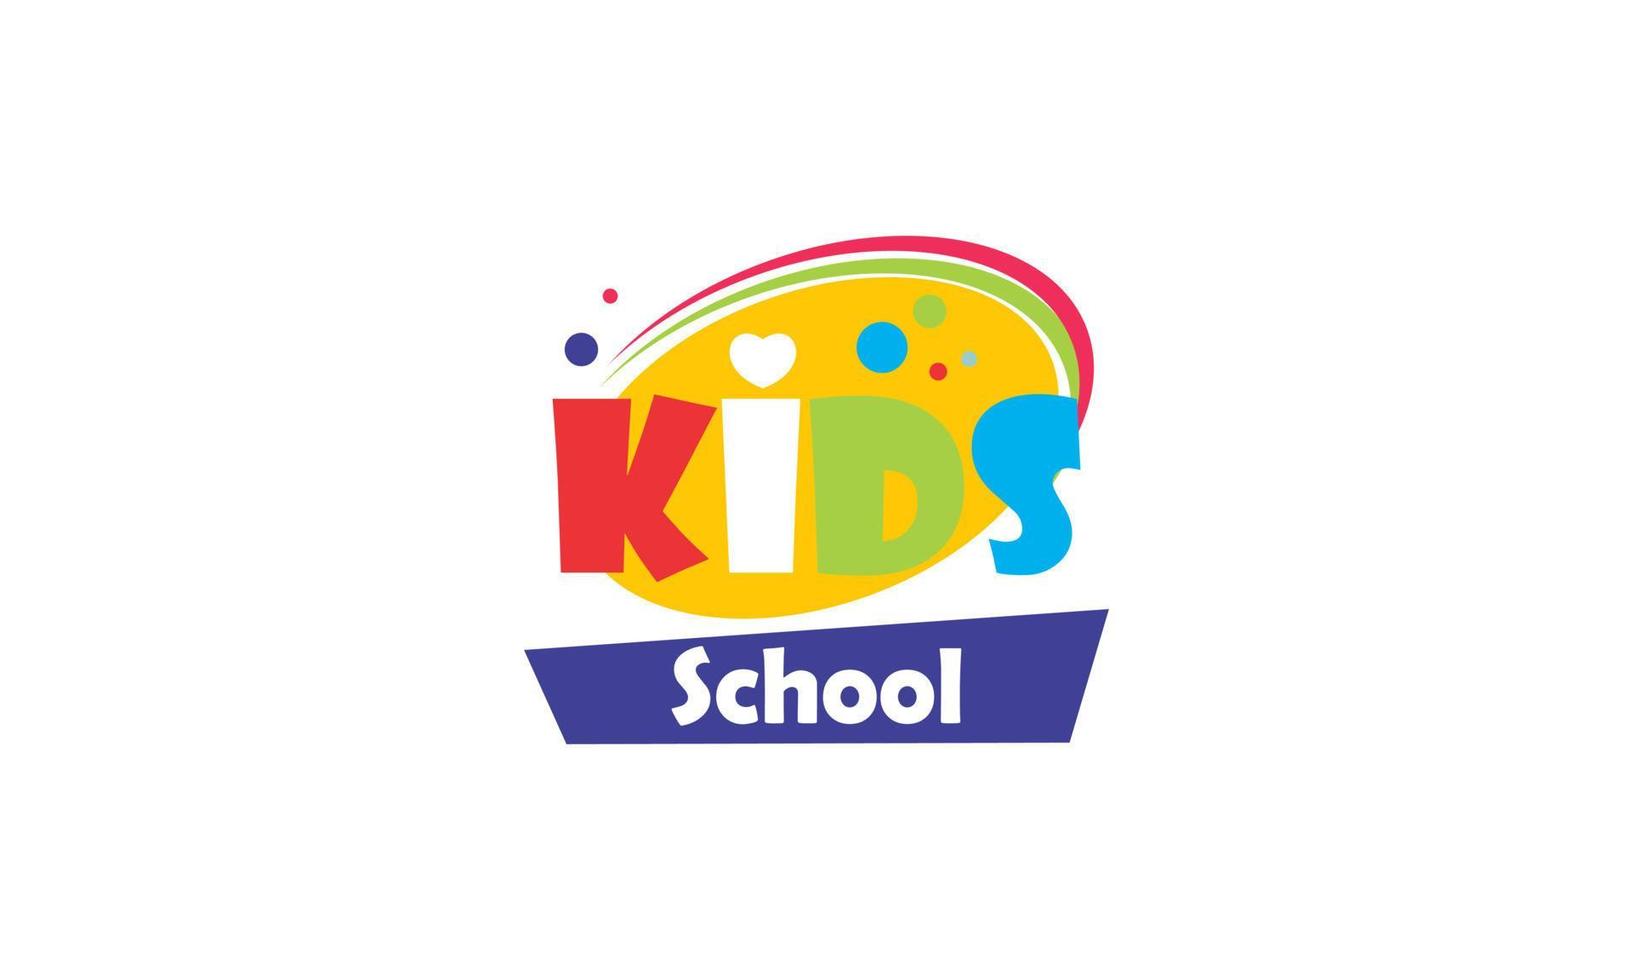 kiddie school- elementair kleurrijk vector logo ontwerp illustratie